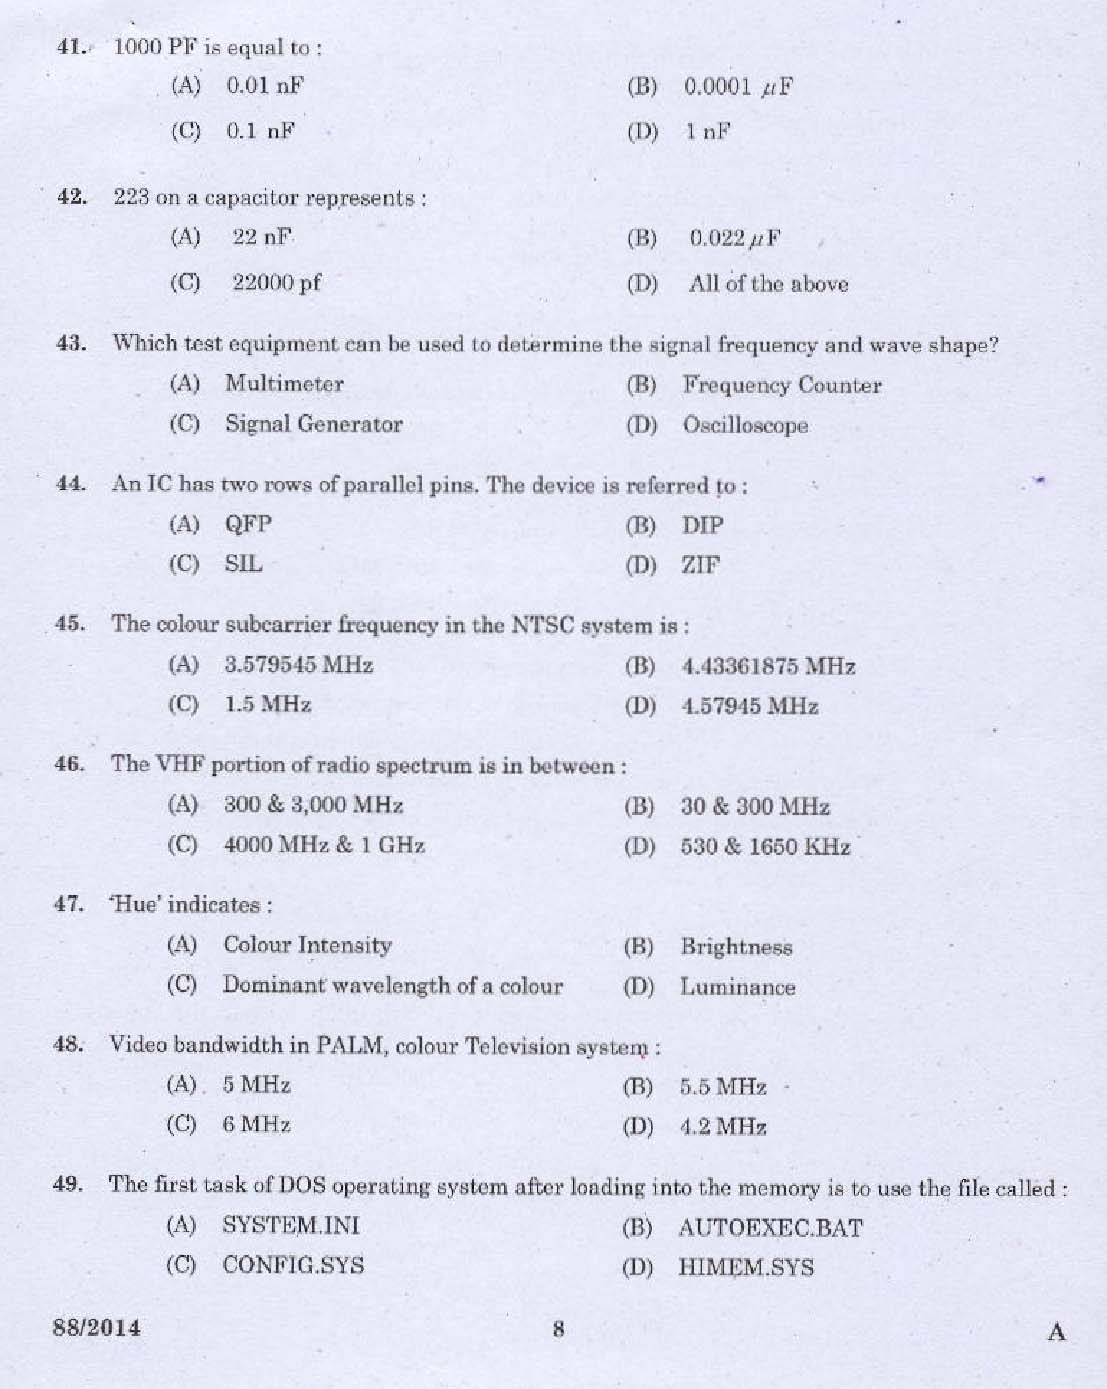 Kerala PSC Junior Instructor Exam Question Paper Code 882014 6